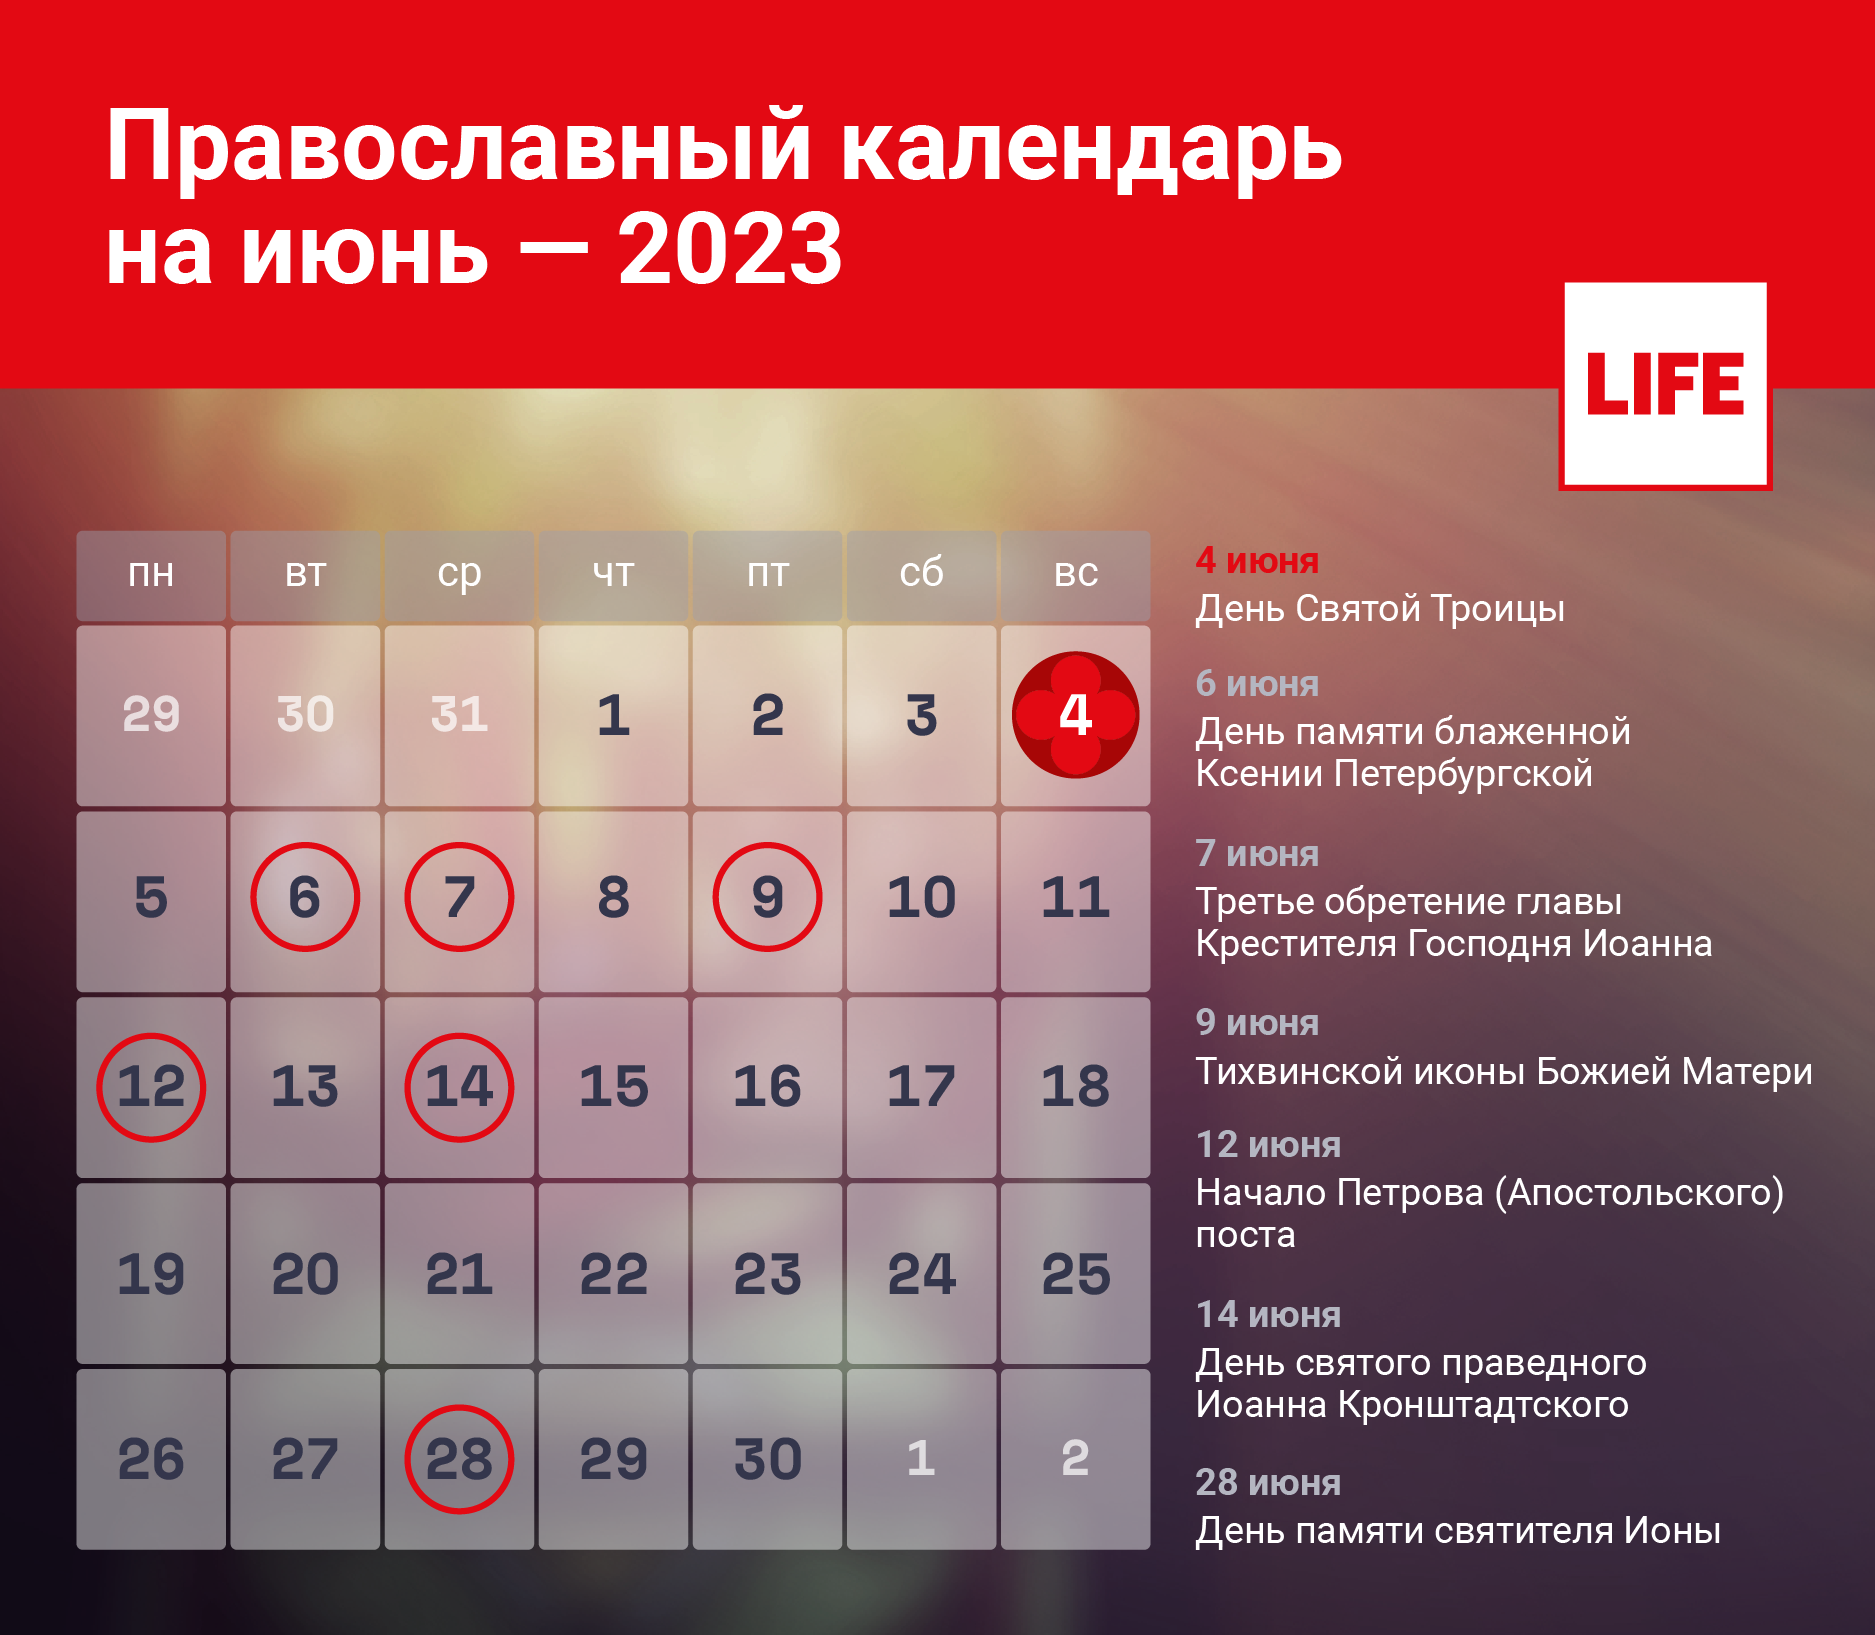 Календарь церковных праздников на июнь 2023 года. Инфографика © LIFE